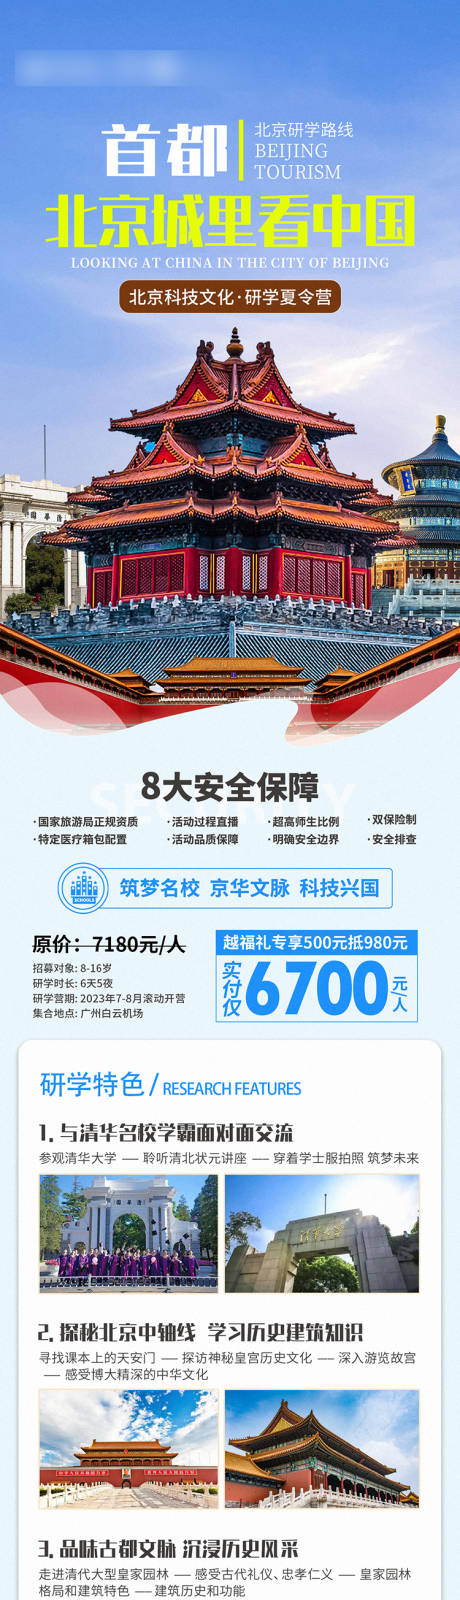 北京夏令营微信海报